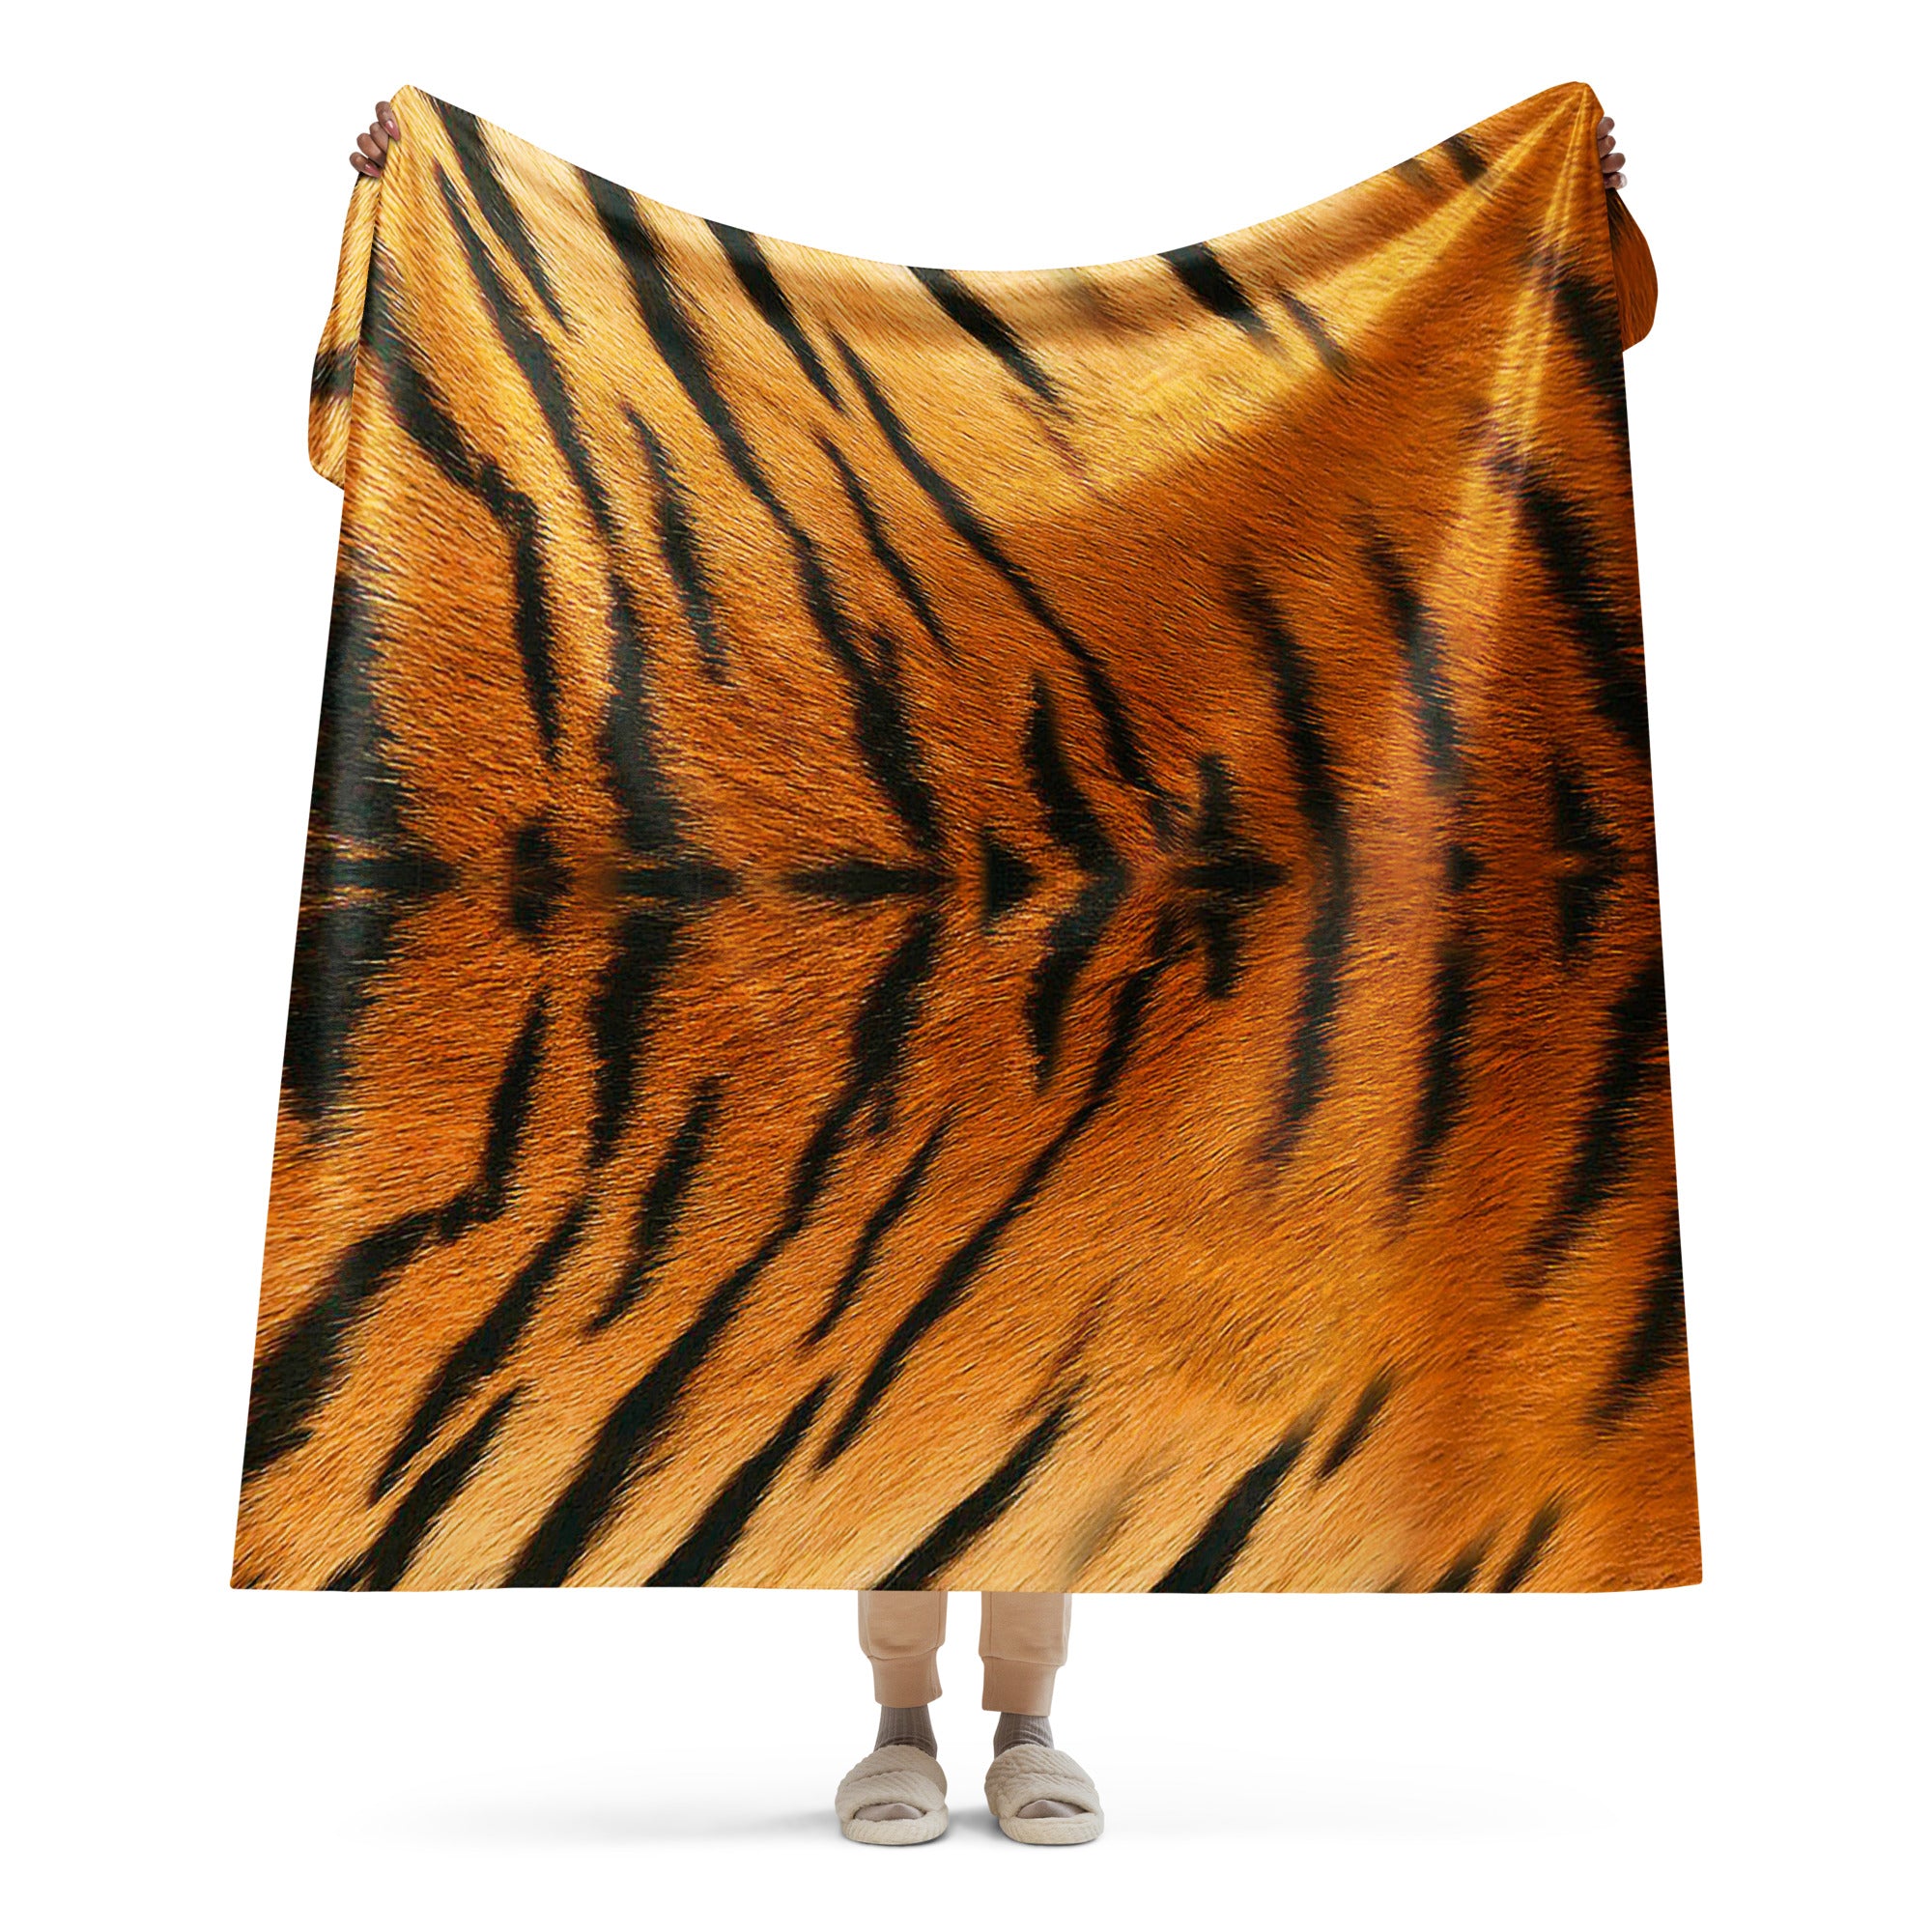 Cozy Tiger Print Sherpa blanket